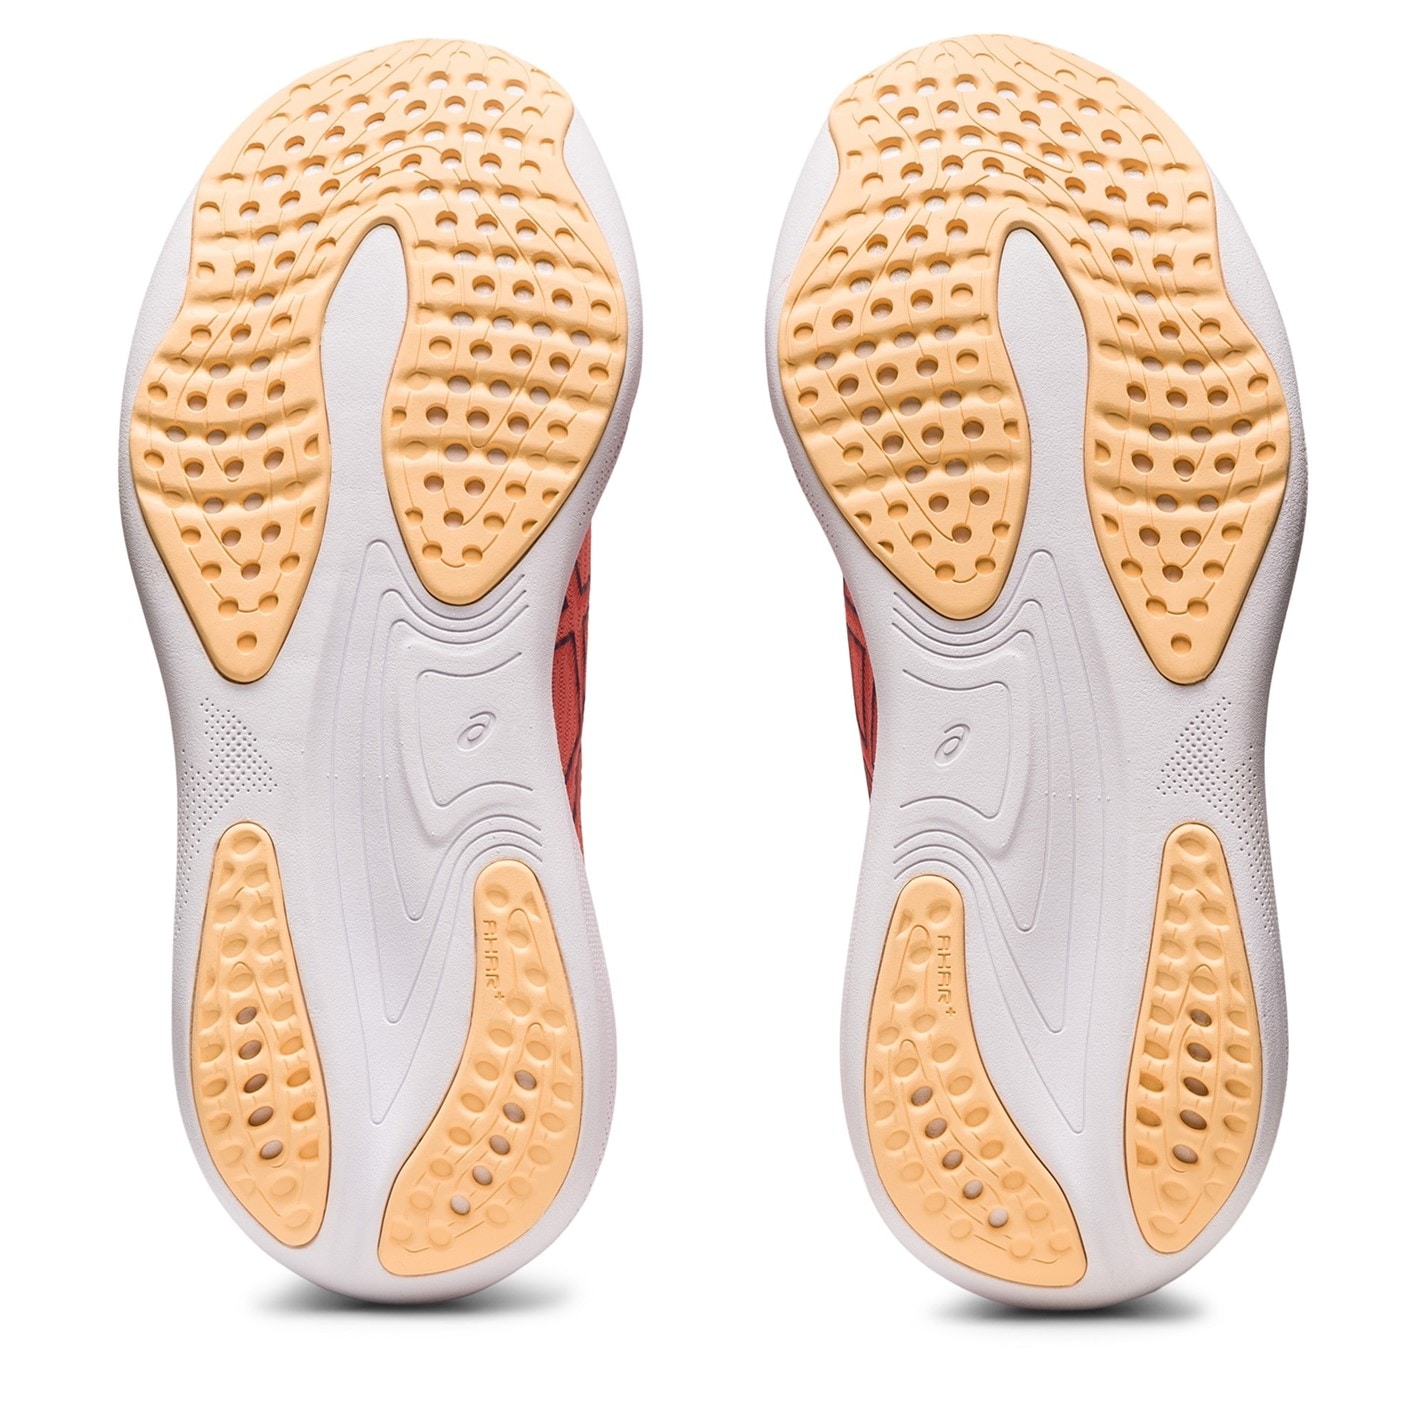 Adidasi alergare Asics GEL-Nimbus 25 pentru femei portocaliu violet